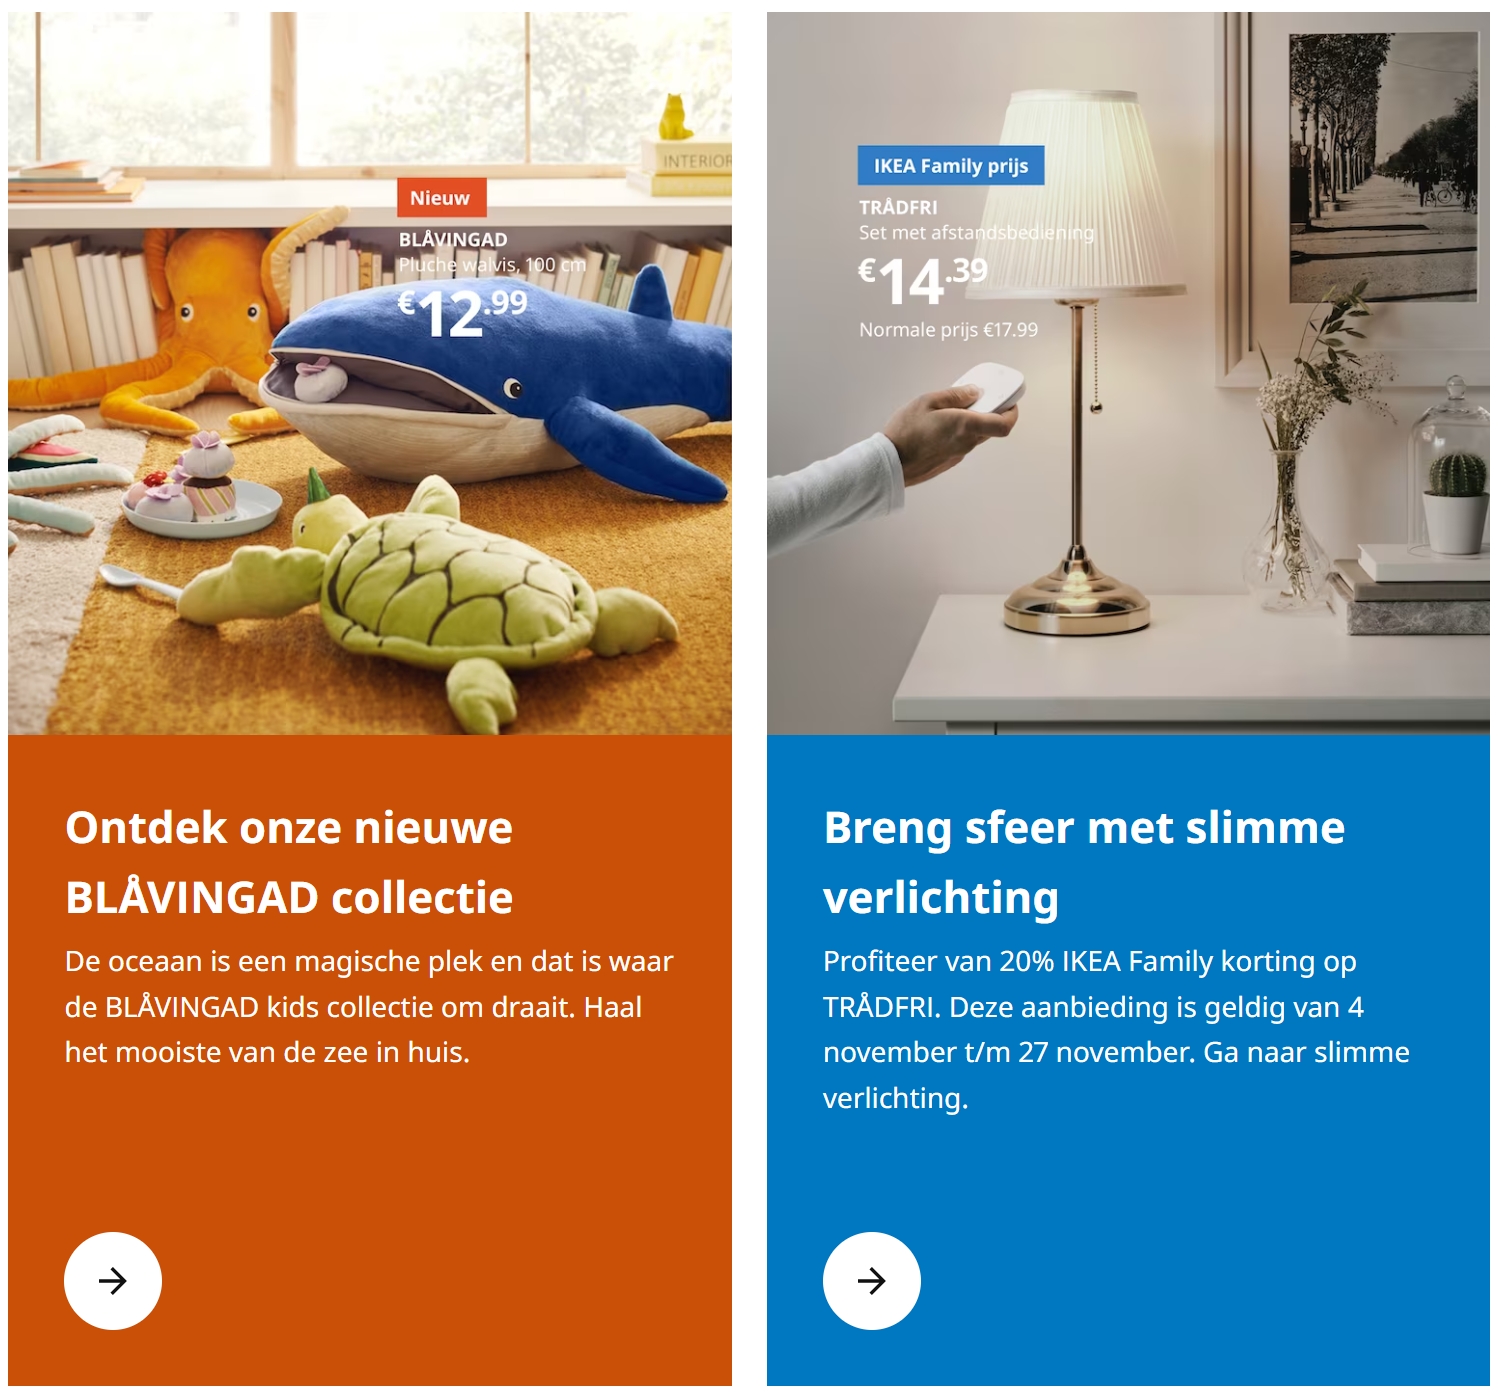 荷兰IKEA免费的儿童福利记得薅，还有多个促销活动正在进行